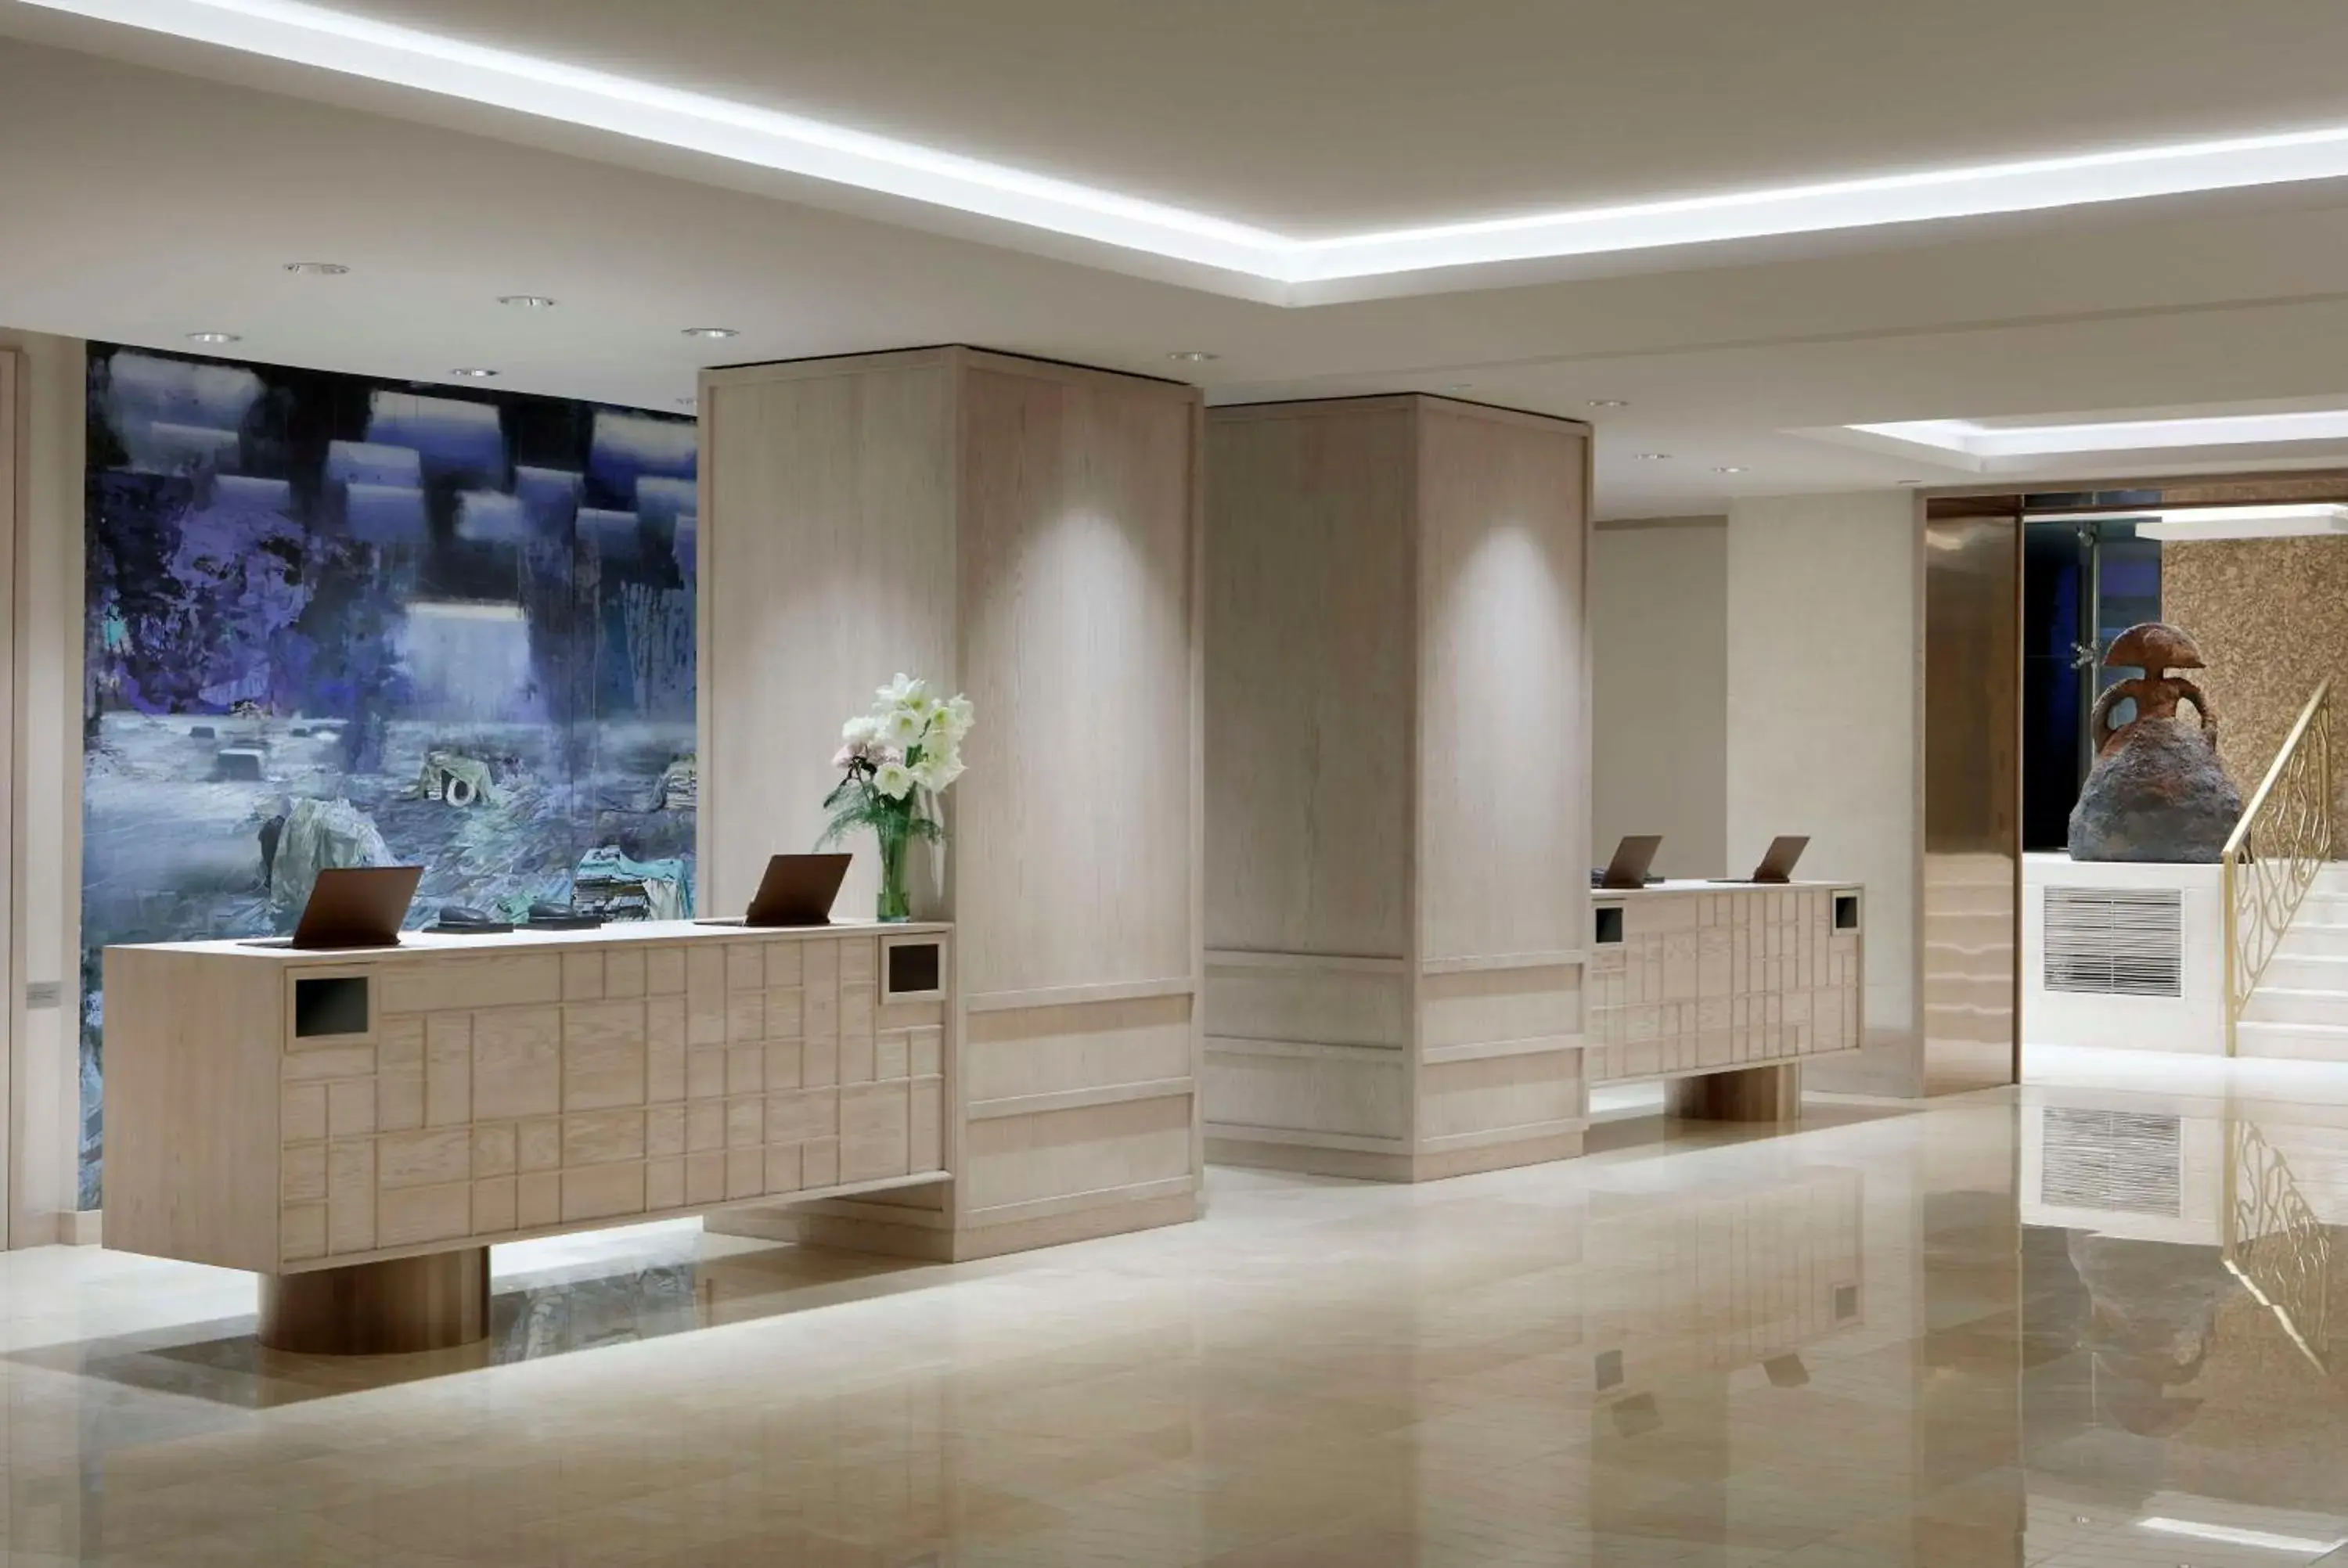 Lobby or reception, Lobby/Reception in Hyatt Regency Hesperia Madrid